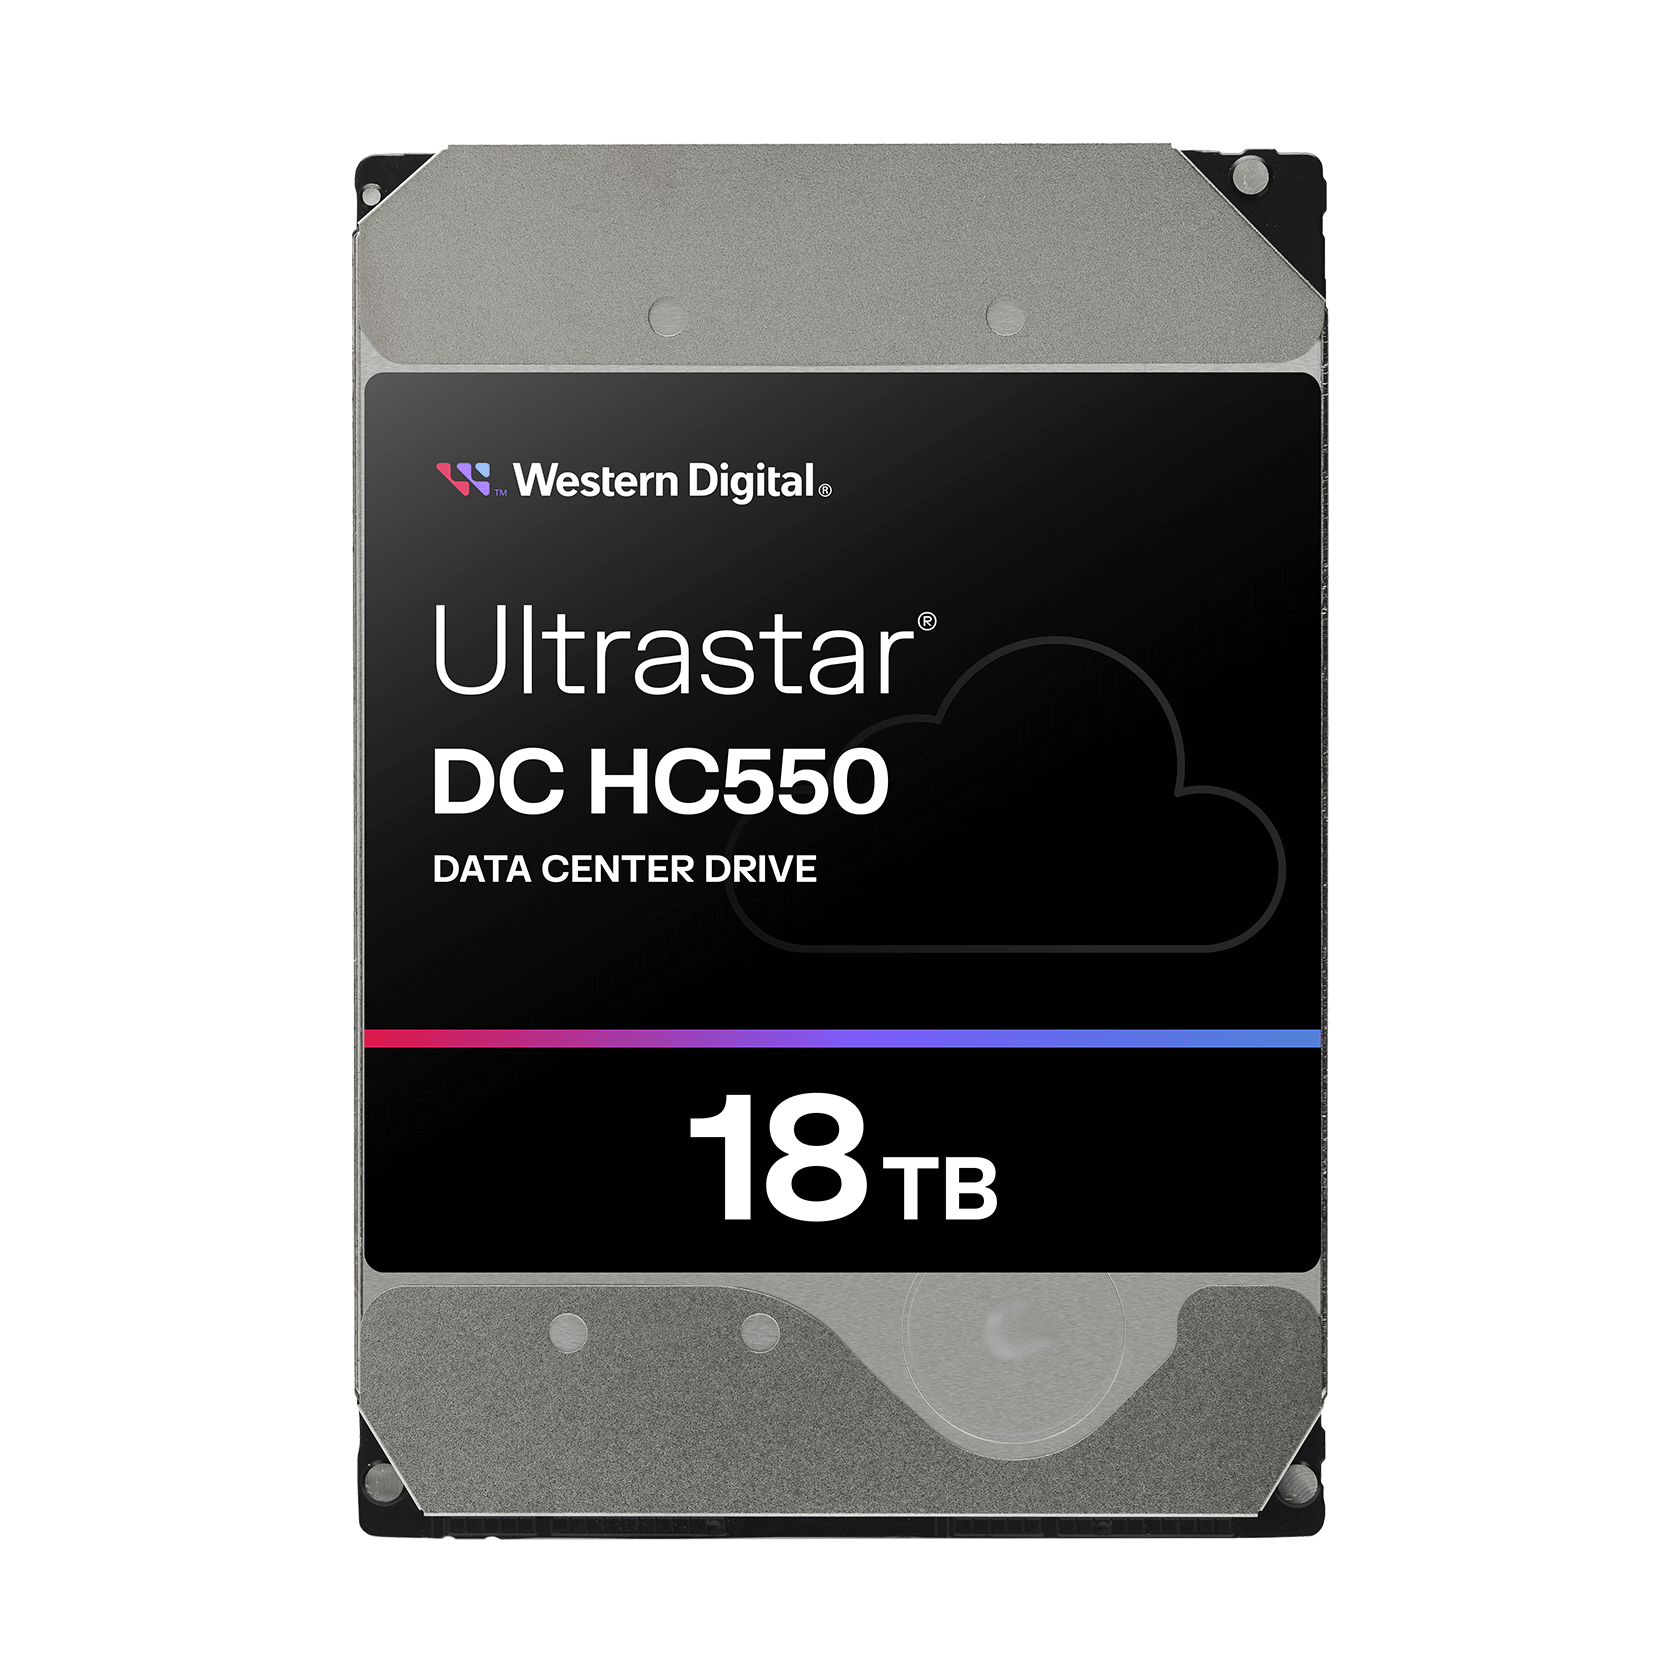 Western Digital 18TB Ultrastar® DC HC550 - 0F38352